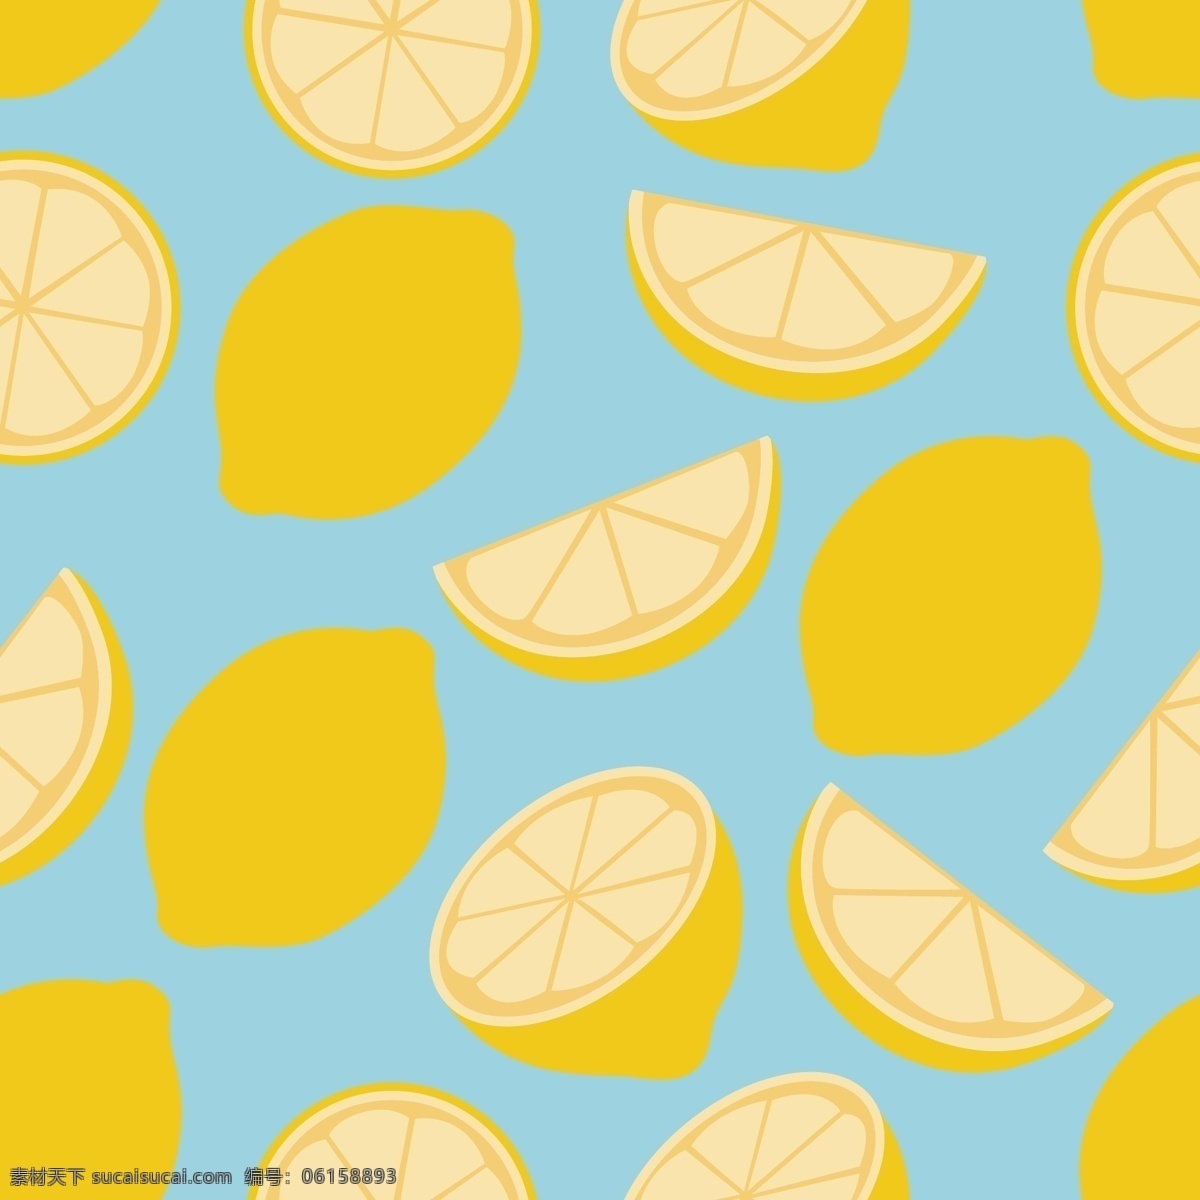 柠檬图片 流行素材 水果元素 柠檬 贺卡 印花图案 边框底纹 包装印刷 服装图案 箱包图案 可编辑 底纹边框 背景底纹